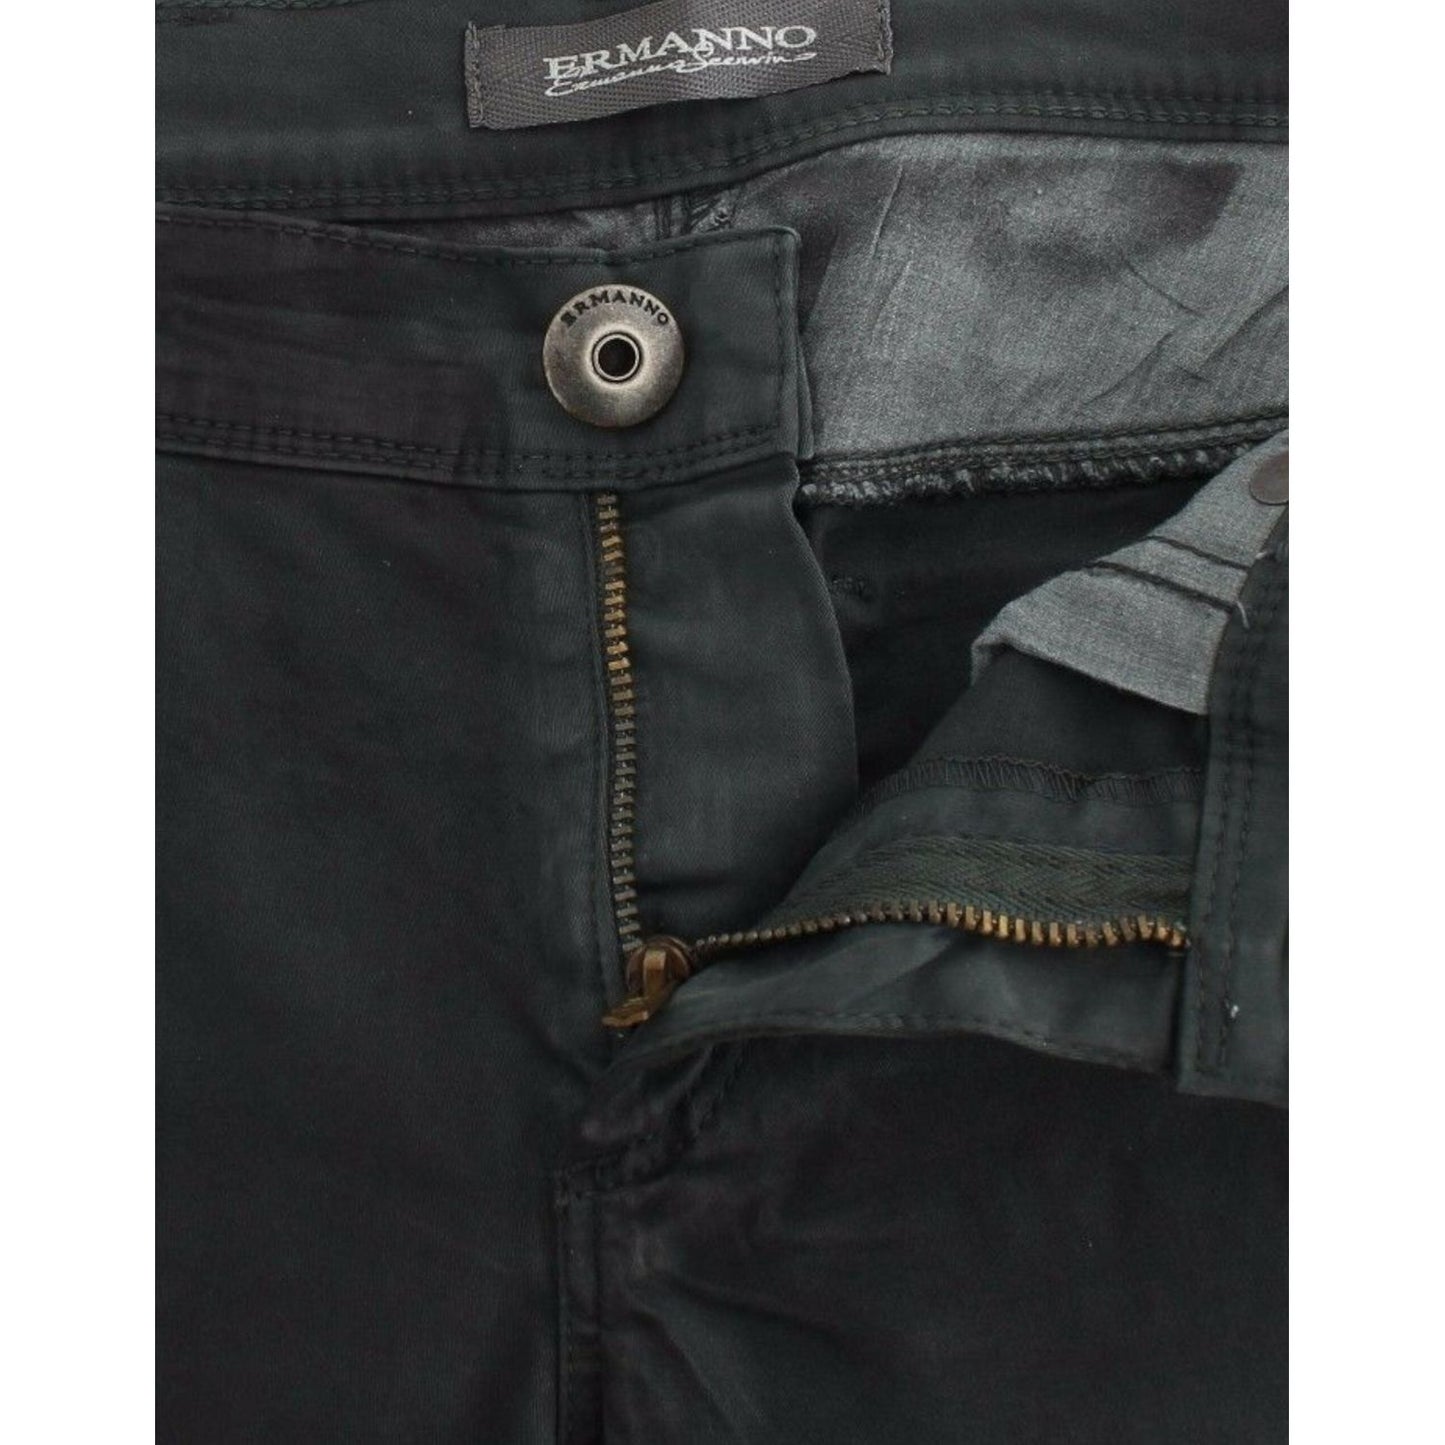 Ermanno Scervino | Elegant Dark Green Slim Fit Jeans| McRichard Designer Brands   